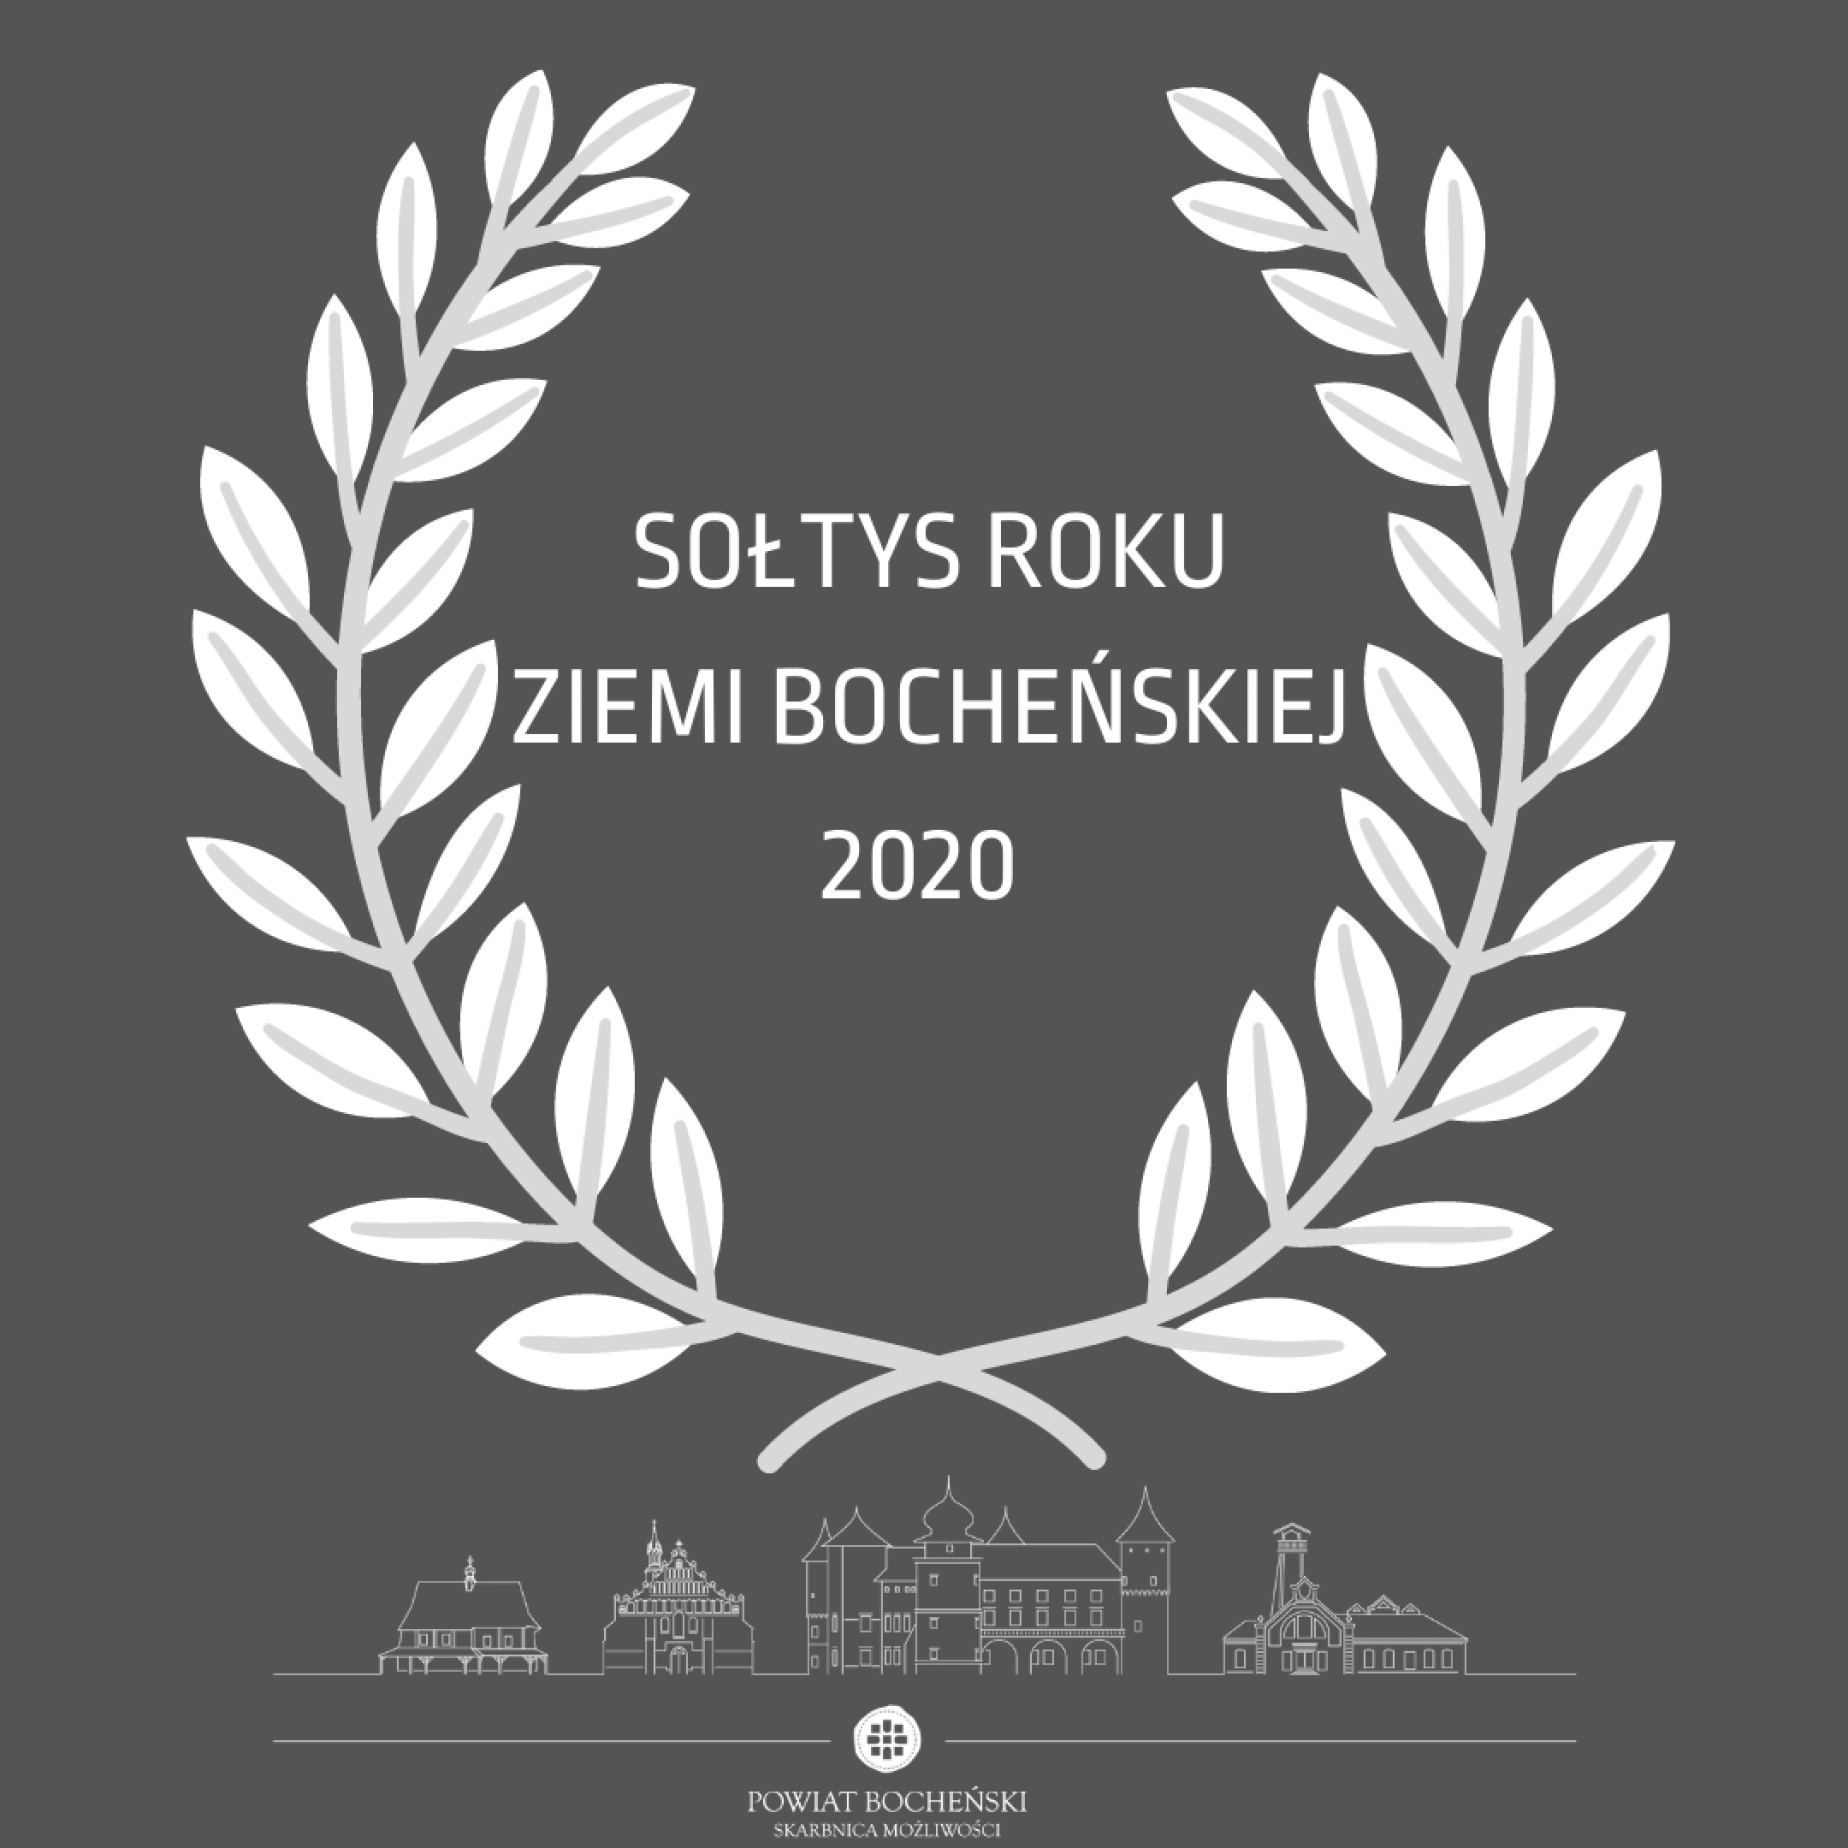 Rołtys Roku Ziemi Bocheńskiej 2020